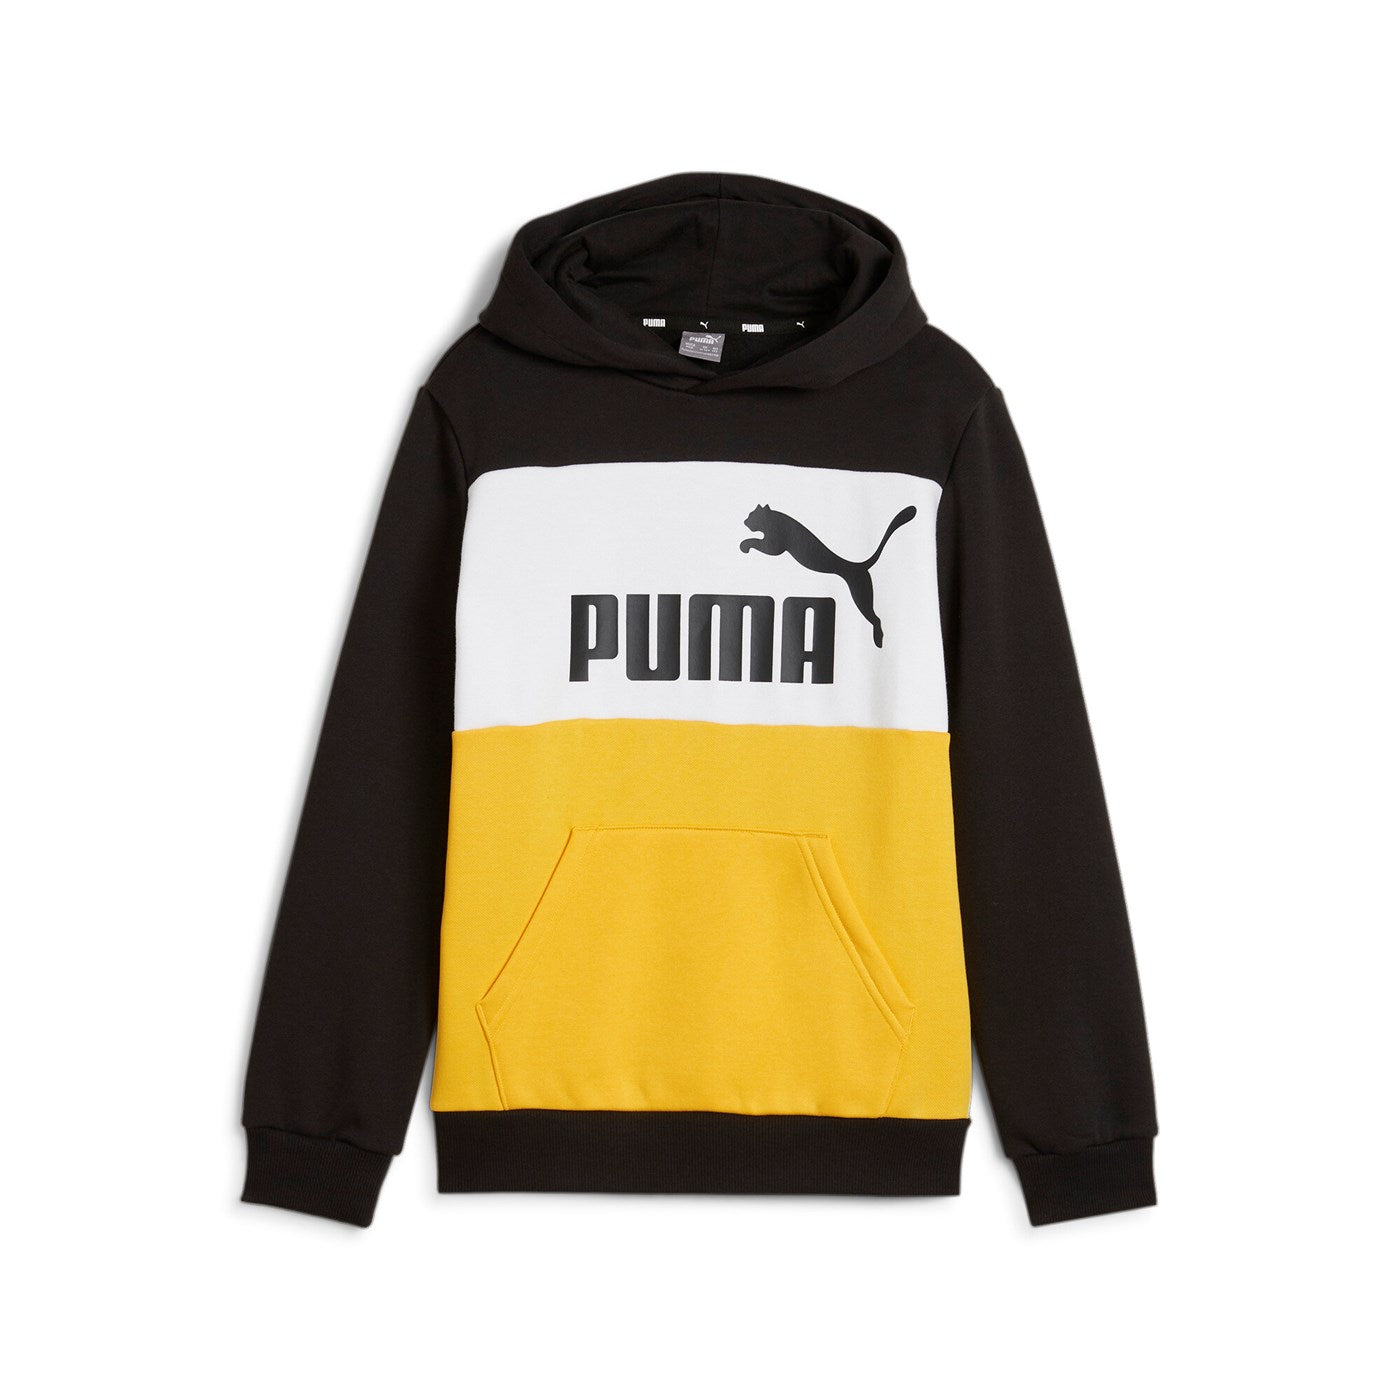 Puma felpa con cappuccio da ragazzo Block 849081-67 giallo-nero